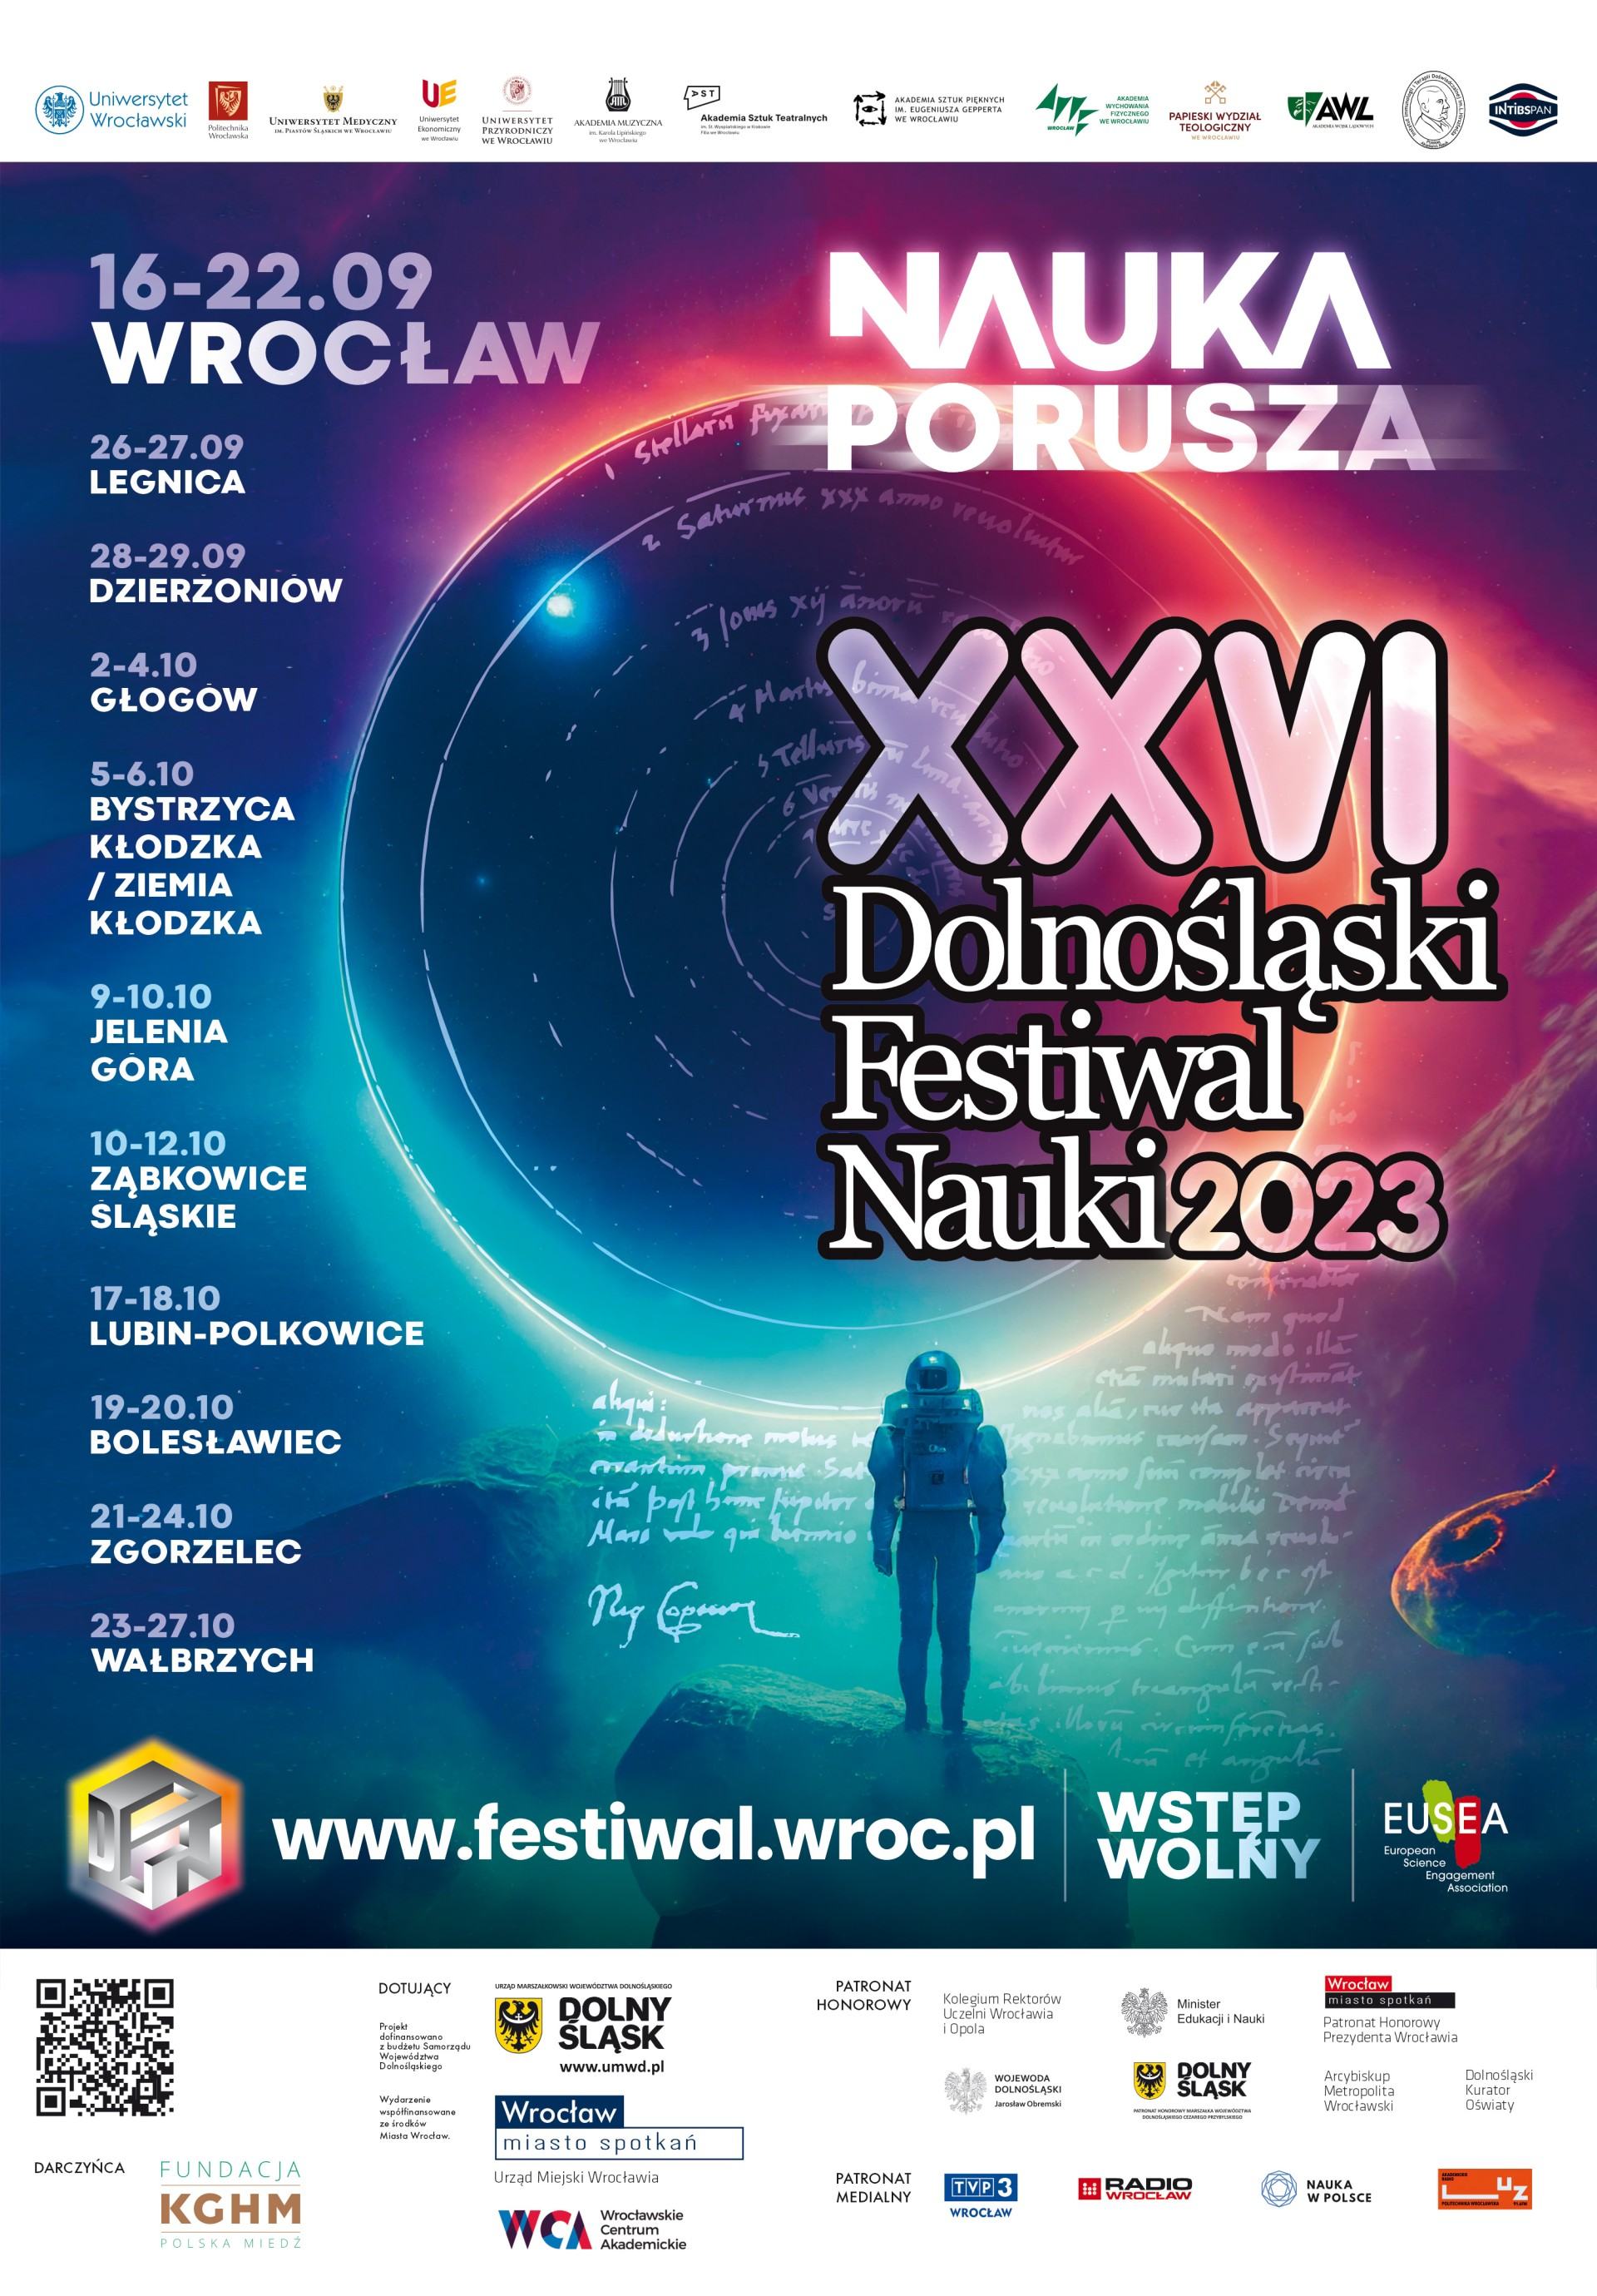 Dolnośląski Festiwal Nauki 2023: Nauka Porusza Sztuką!